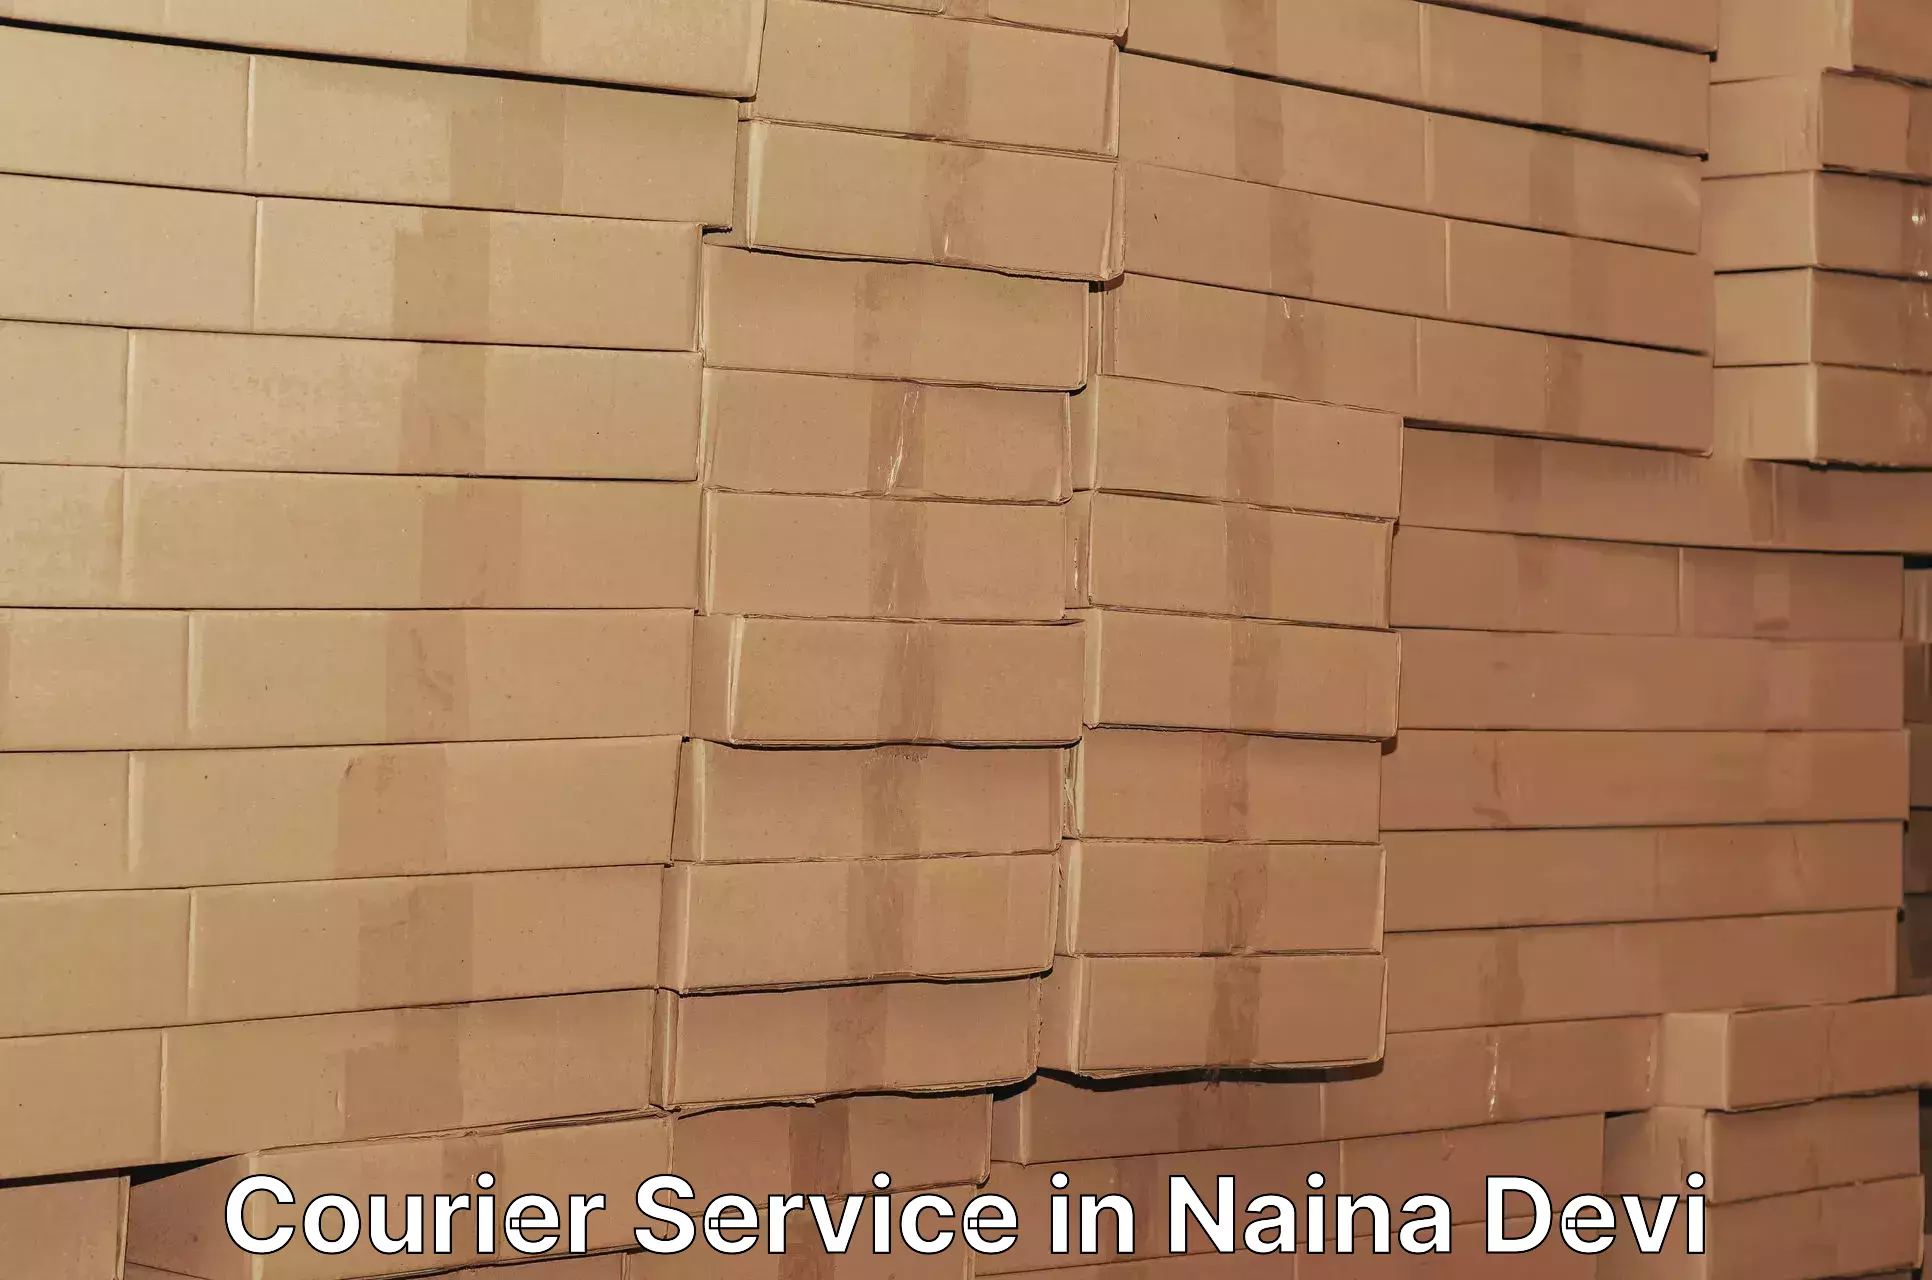 Express shipping in Naina Devi